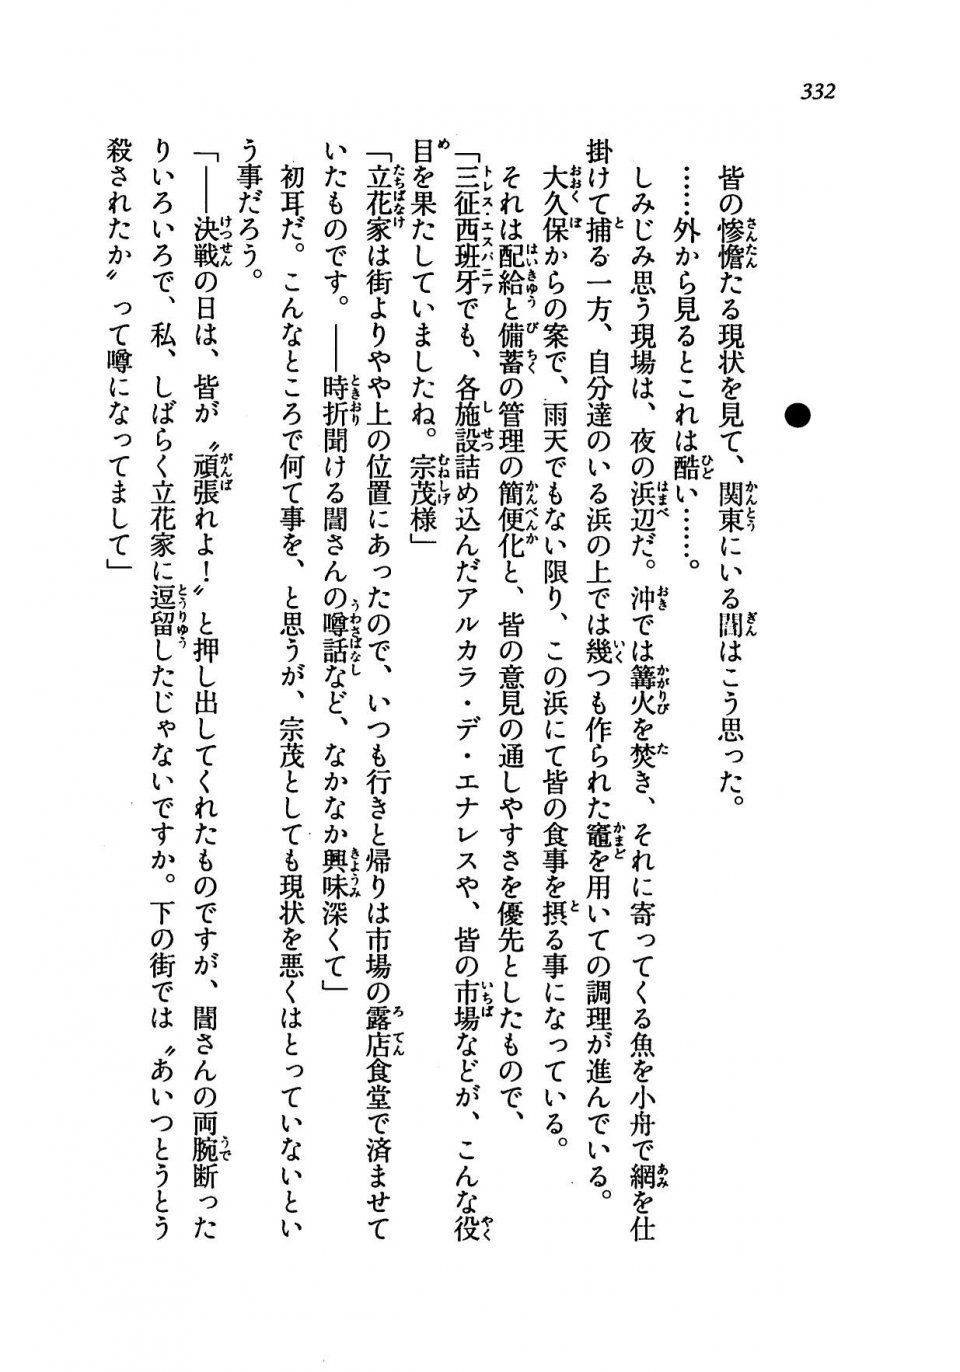 Kyoukai Senjou no Horizon LN Vol 19(8A) - Photo #332